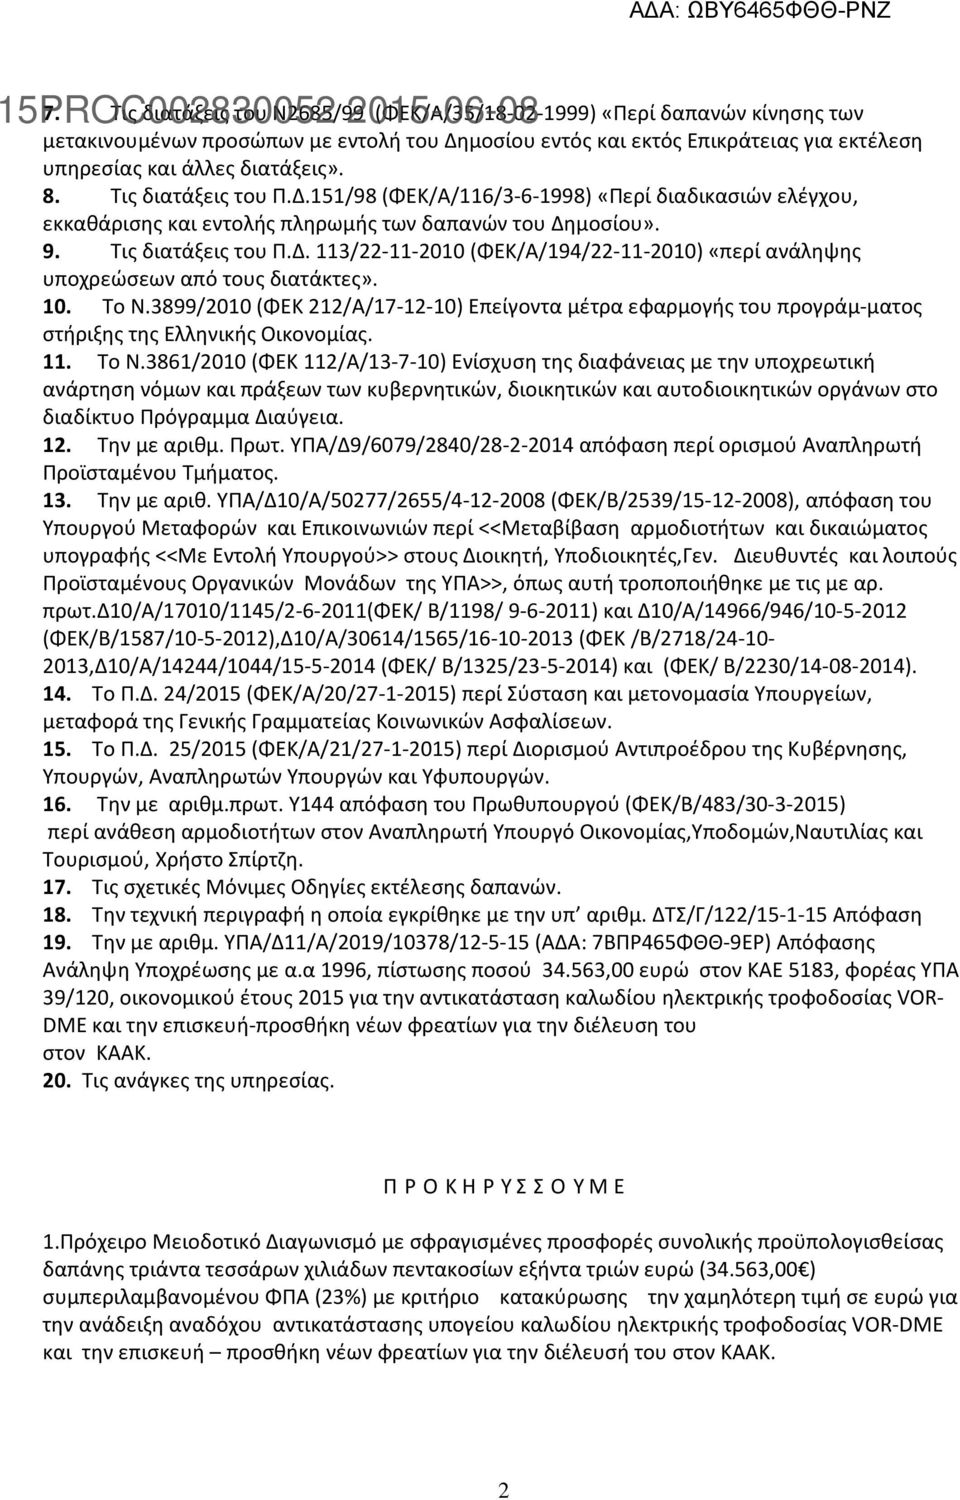 10. Το Ν.3899/2010 (ΦΕΚ 212/Α/17-12-10) Επείγοντα μέτρα εφαρμογής του προγράμ-ματος στήριξης της Ελληνικής Οικονομίας. 11. Το Ν.3861/2010 (ΦΕΚ 112/Α/13-7-10) Ενίσχυση της διαφάνειας με την υποχρεωτική ανάρτηση νόμων και πράξεων των κυβερνητικών, διοικητικών και αυτοδιοικητικών οργάνων στο διαδίκτυο Πρόγραμμα Διαύγεια.